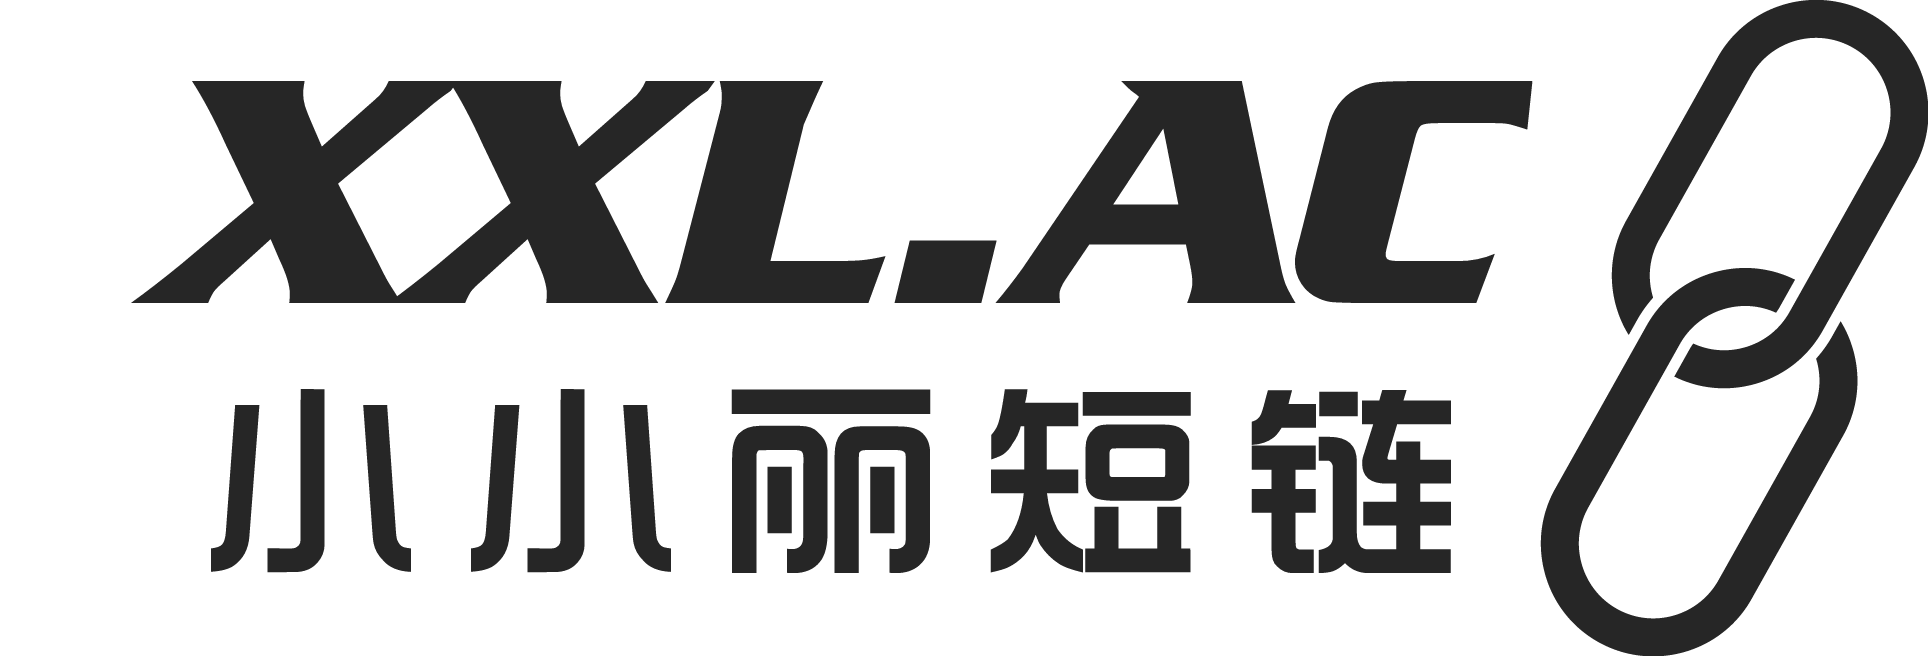 小小丽 - 短链 Logo